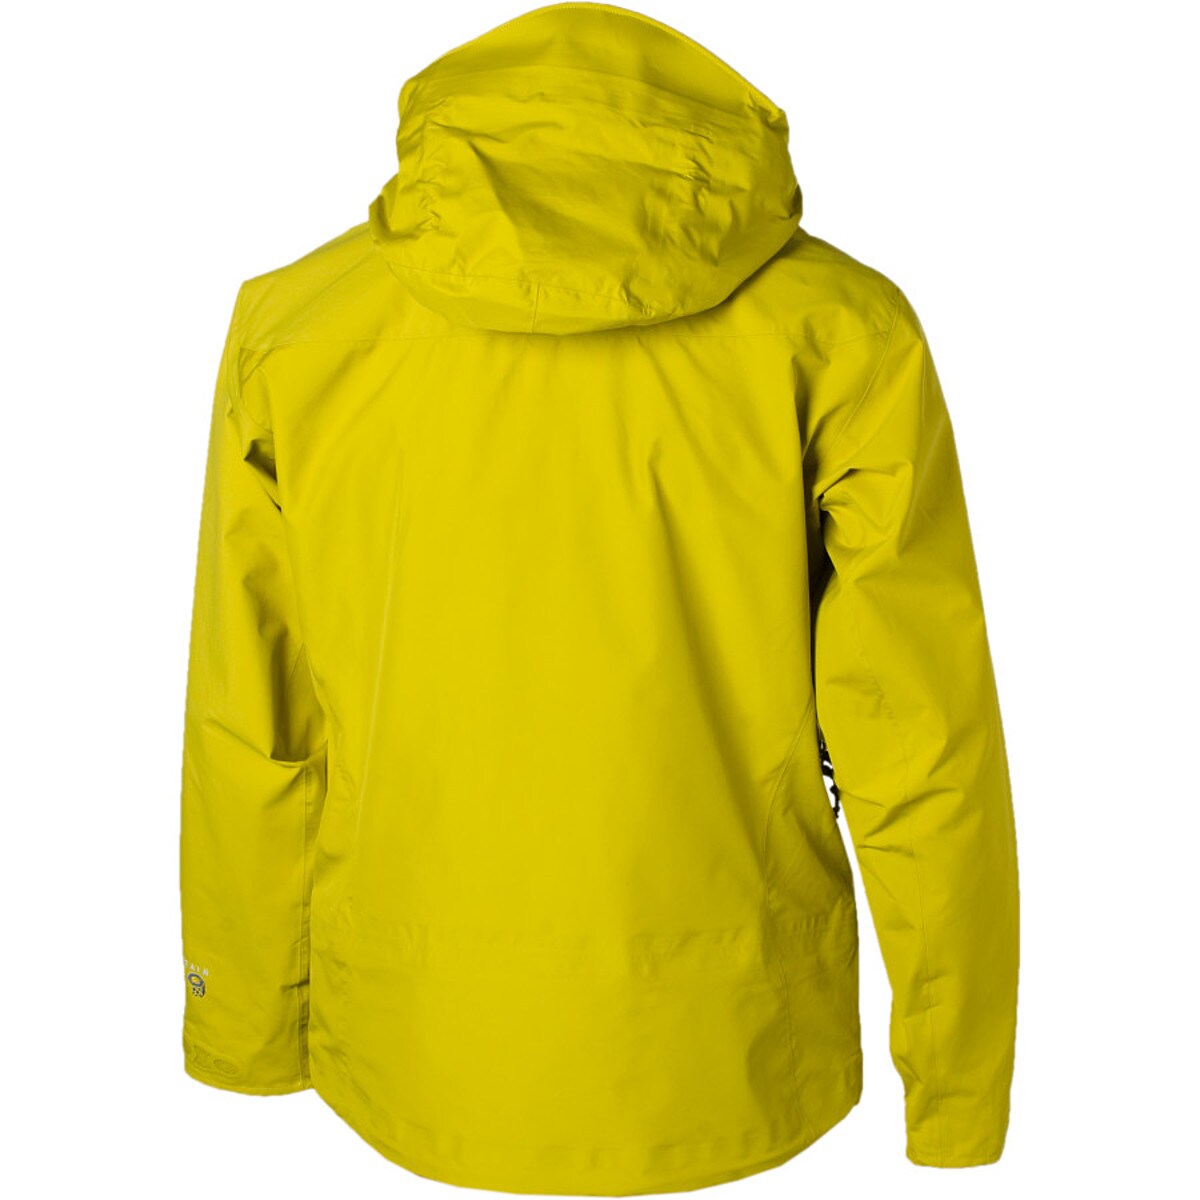 Mountain Hardwear Beryllium Jacket - Men's - Clothing